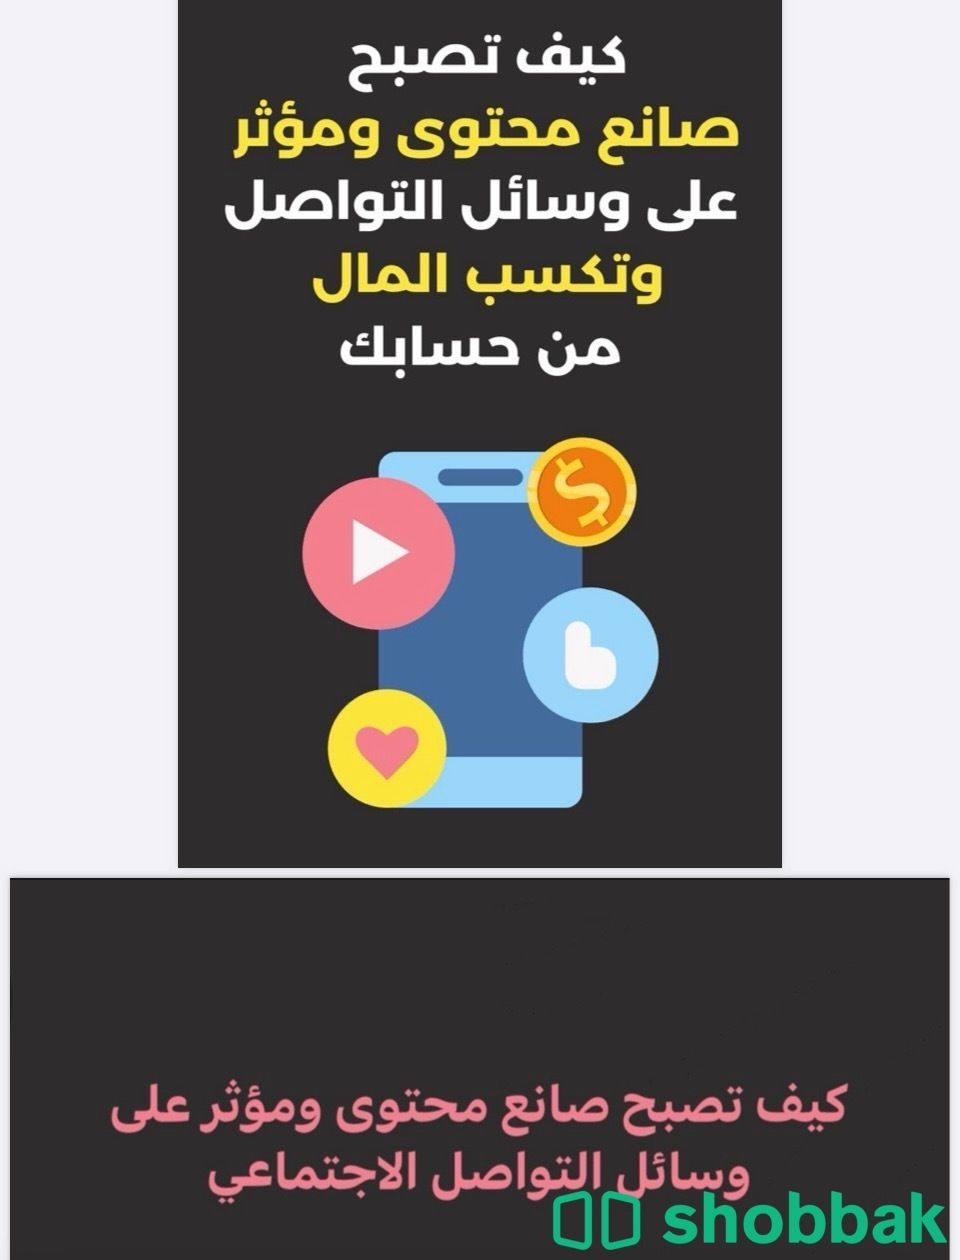 دورة كيف تصبح صانع محتوى و مؤثر على وسائل التواصل  Shobbak Saudi Arabia